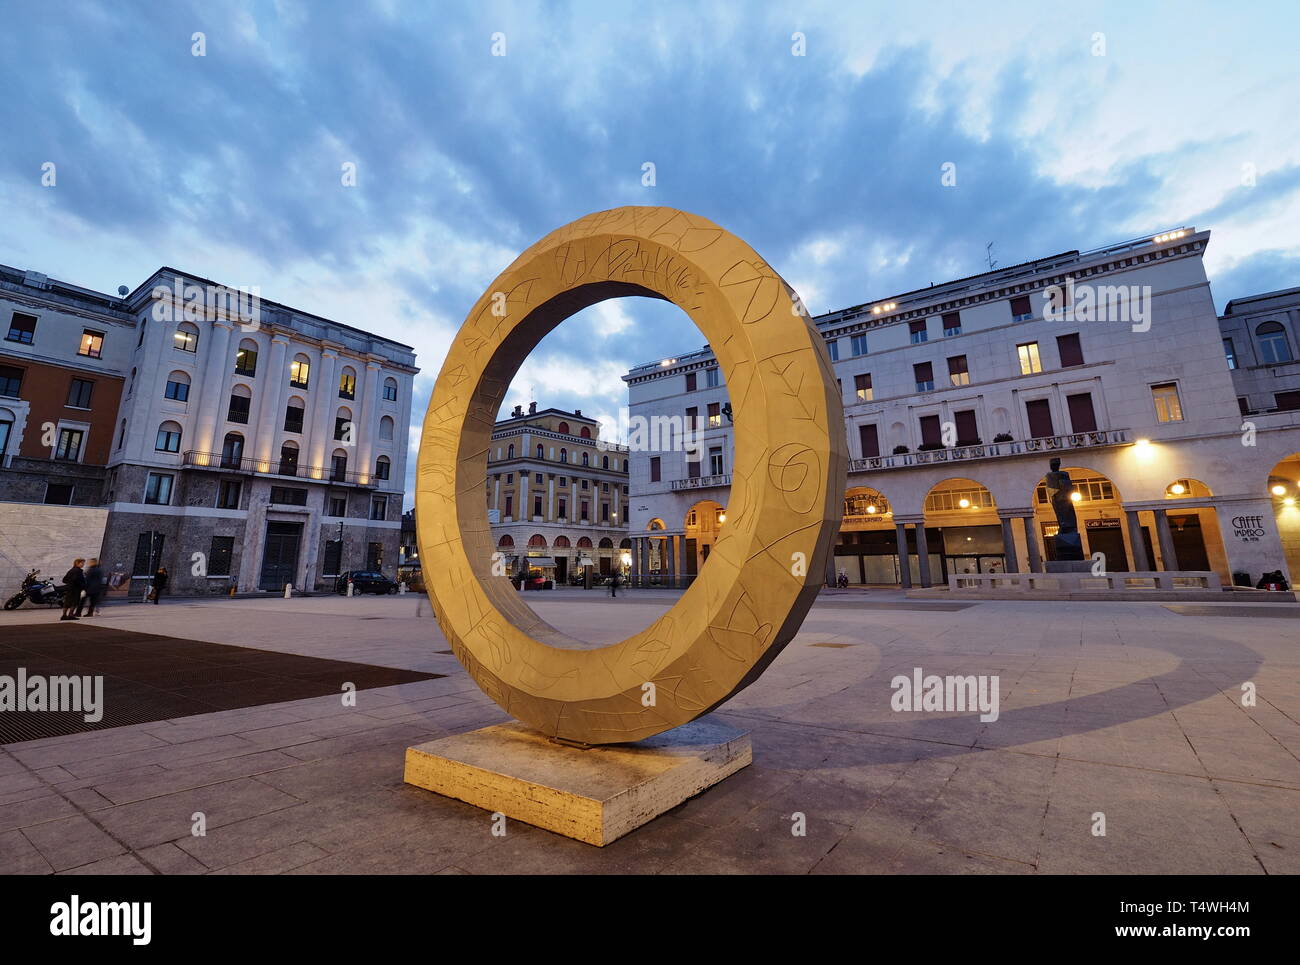 BRESCIA, 8. März 2018: Eine moderne Skulptur in der Piazza della Vittoria, Brescia, Lombardei, Italien. Stockfoto